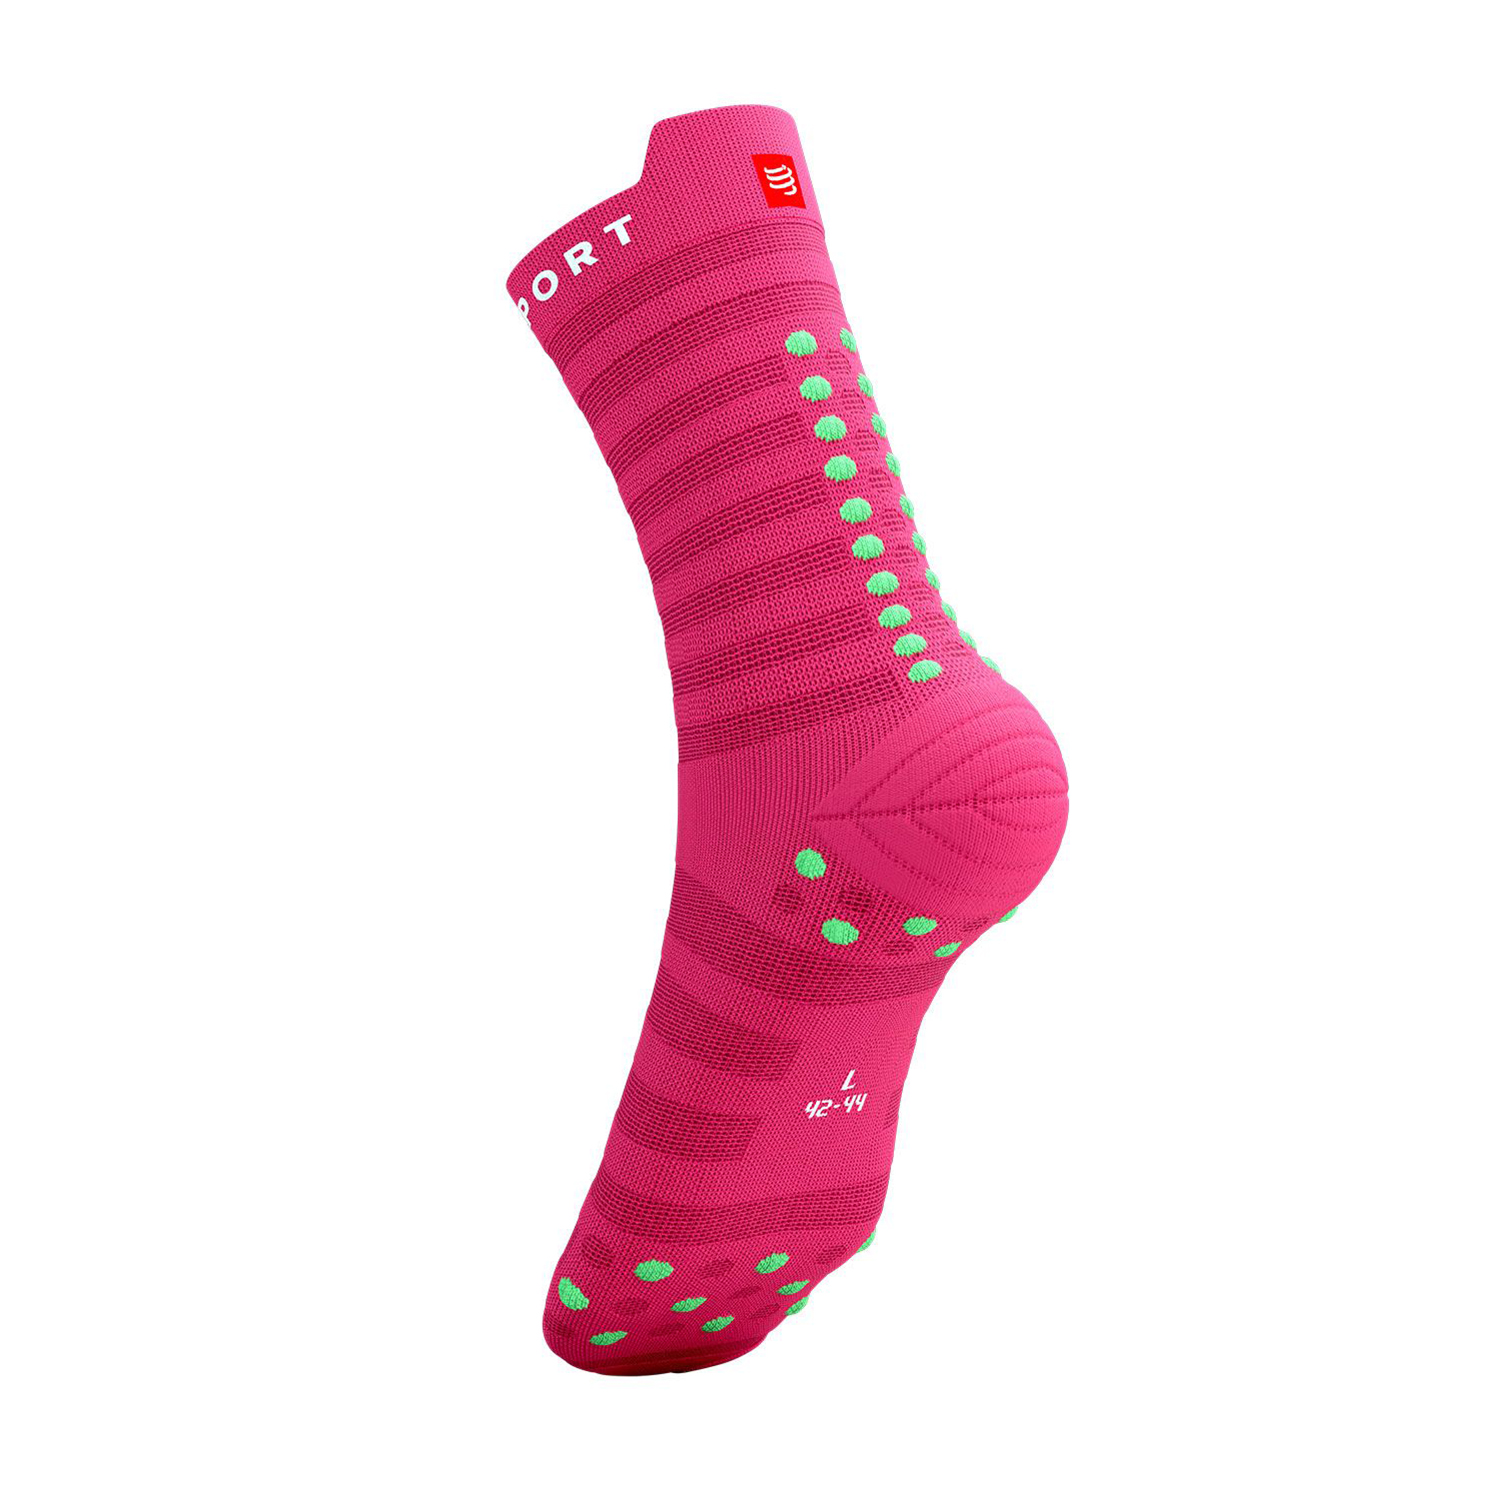 Compressport Pro Racing V4.0 Ultralight Socks - Hot Pink/Summer Green